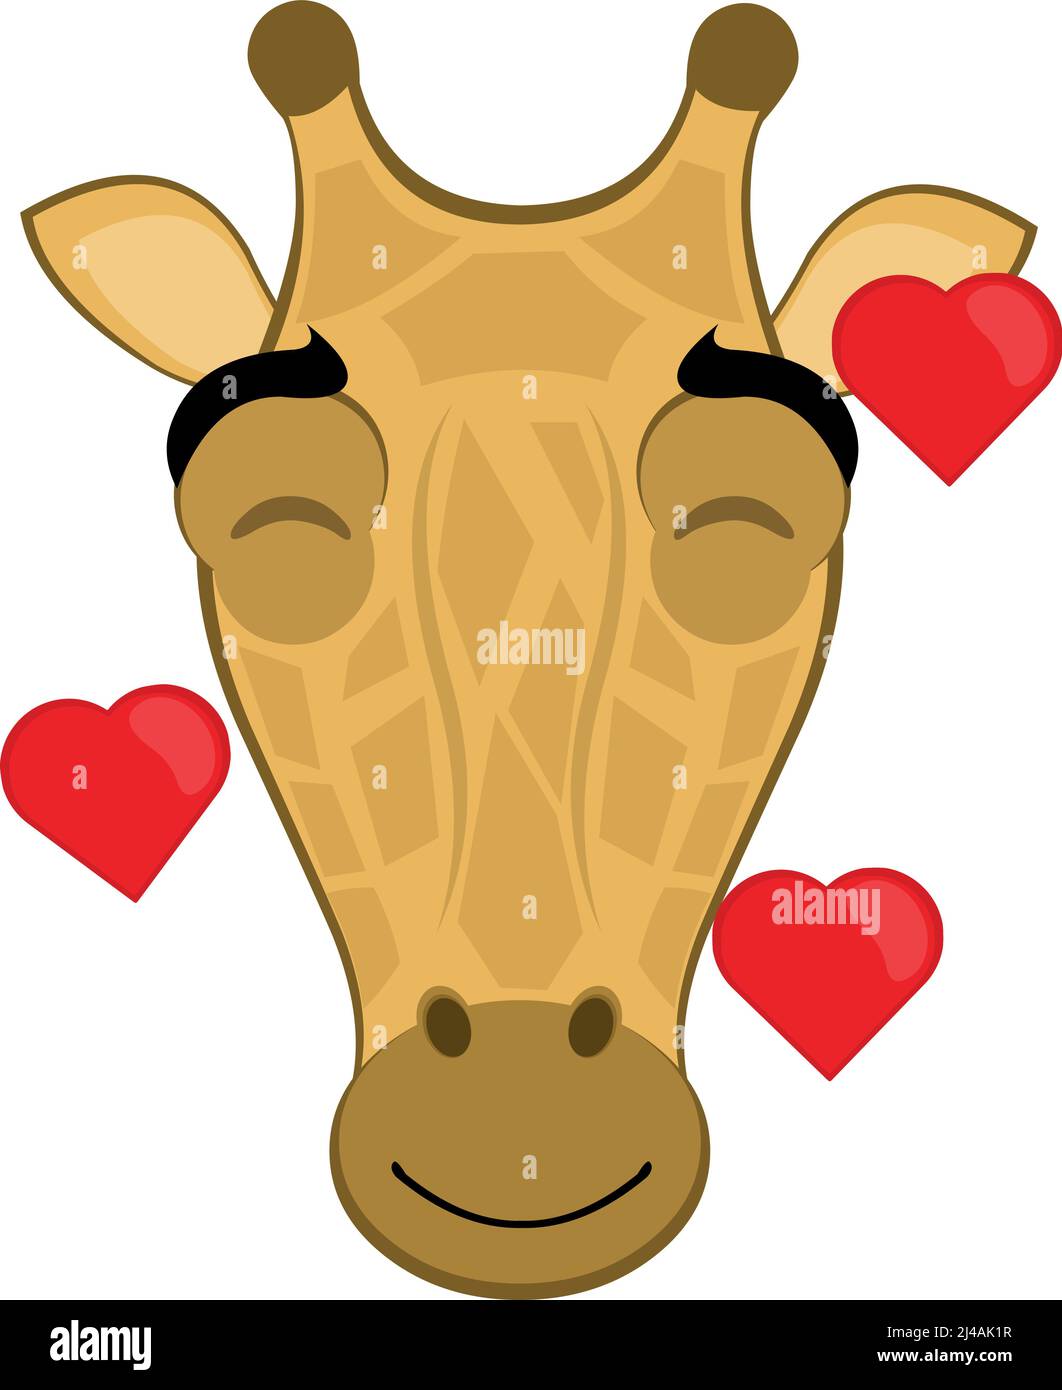 Illustration vectorielle du visage d'une girafe de dessin animé avec une expression heureuse de l'amour et entourée de coeurs Illustration de Vecteur